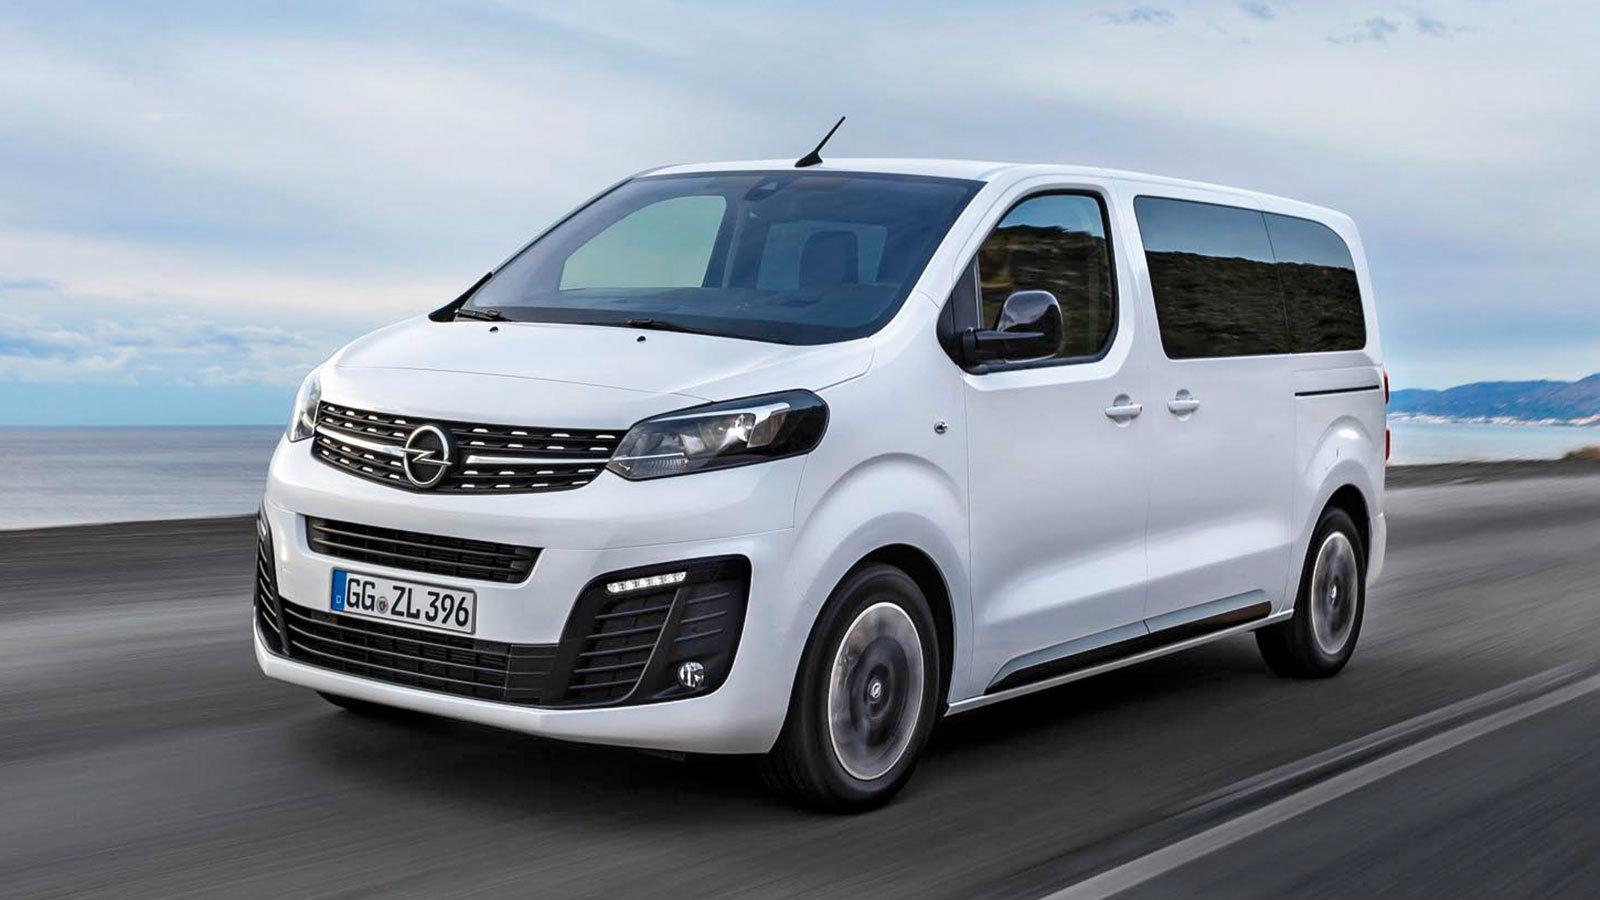 Το νέο 7θέσιο βαν της Opel θα μεταφέρει με άνεση τους επιβάτες και τις αποσκευές τους.